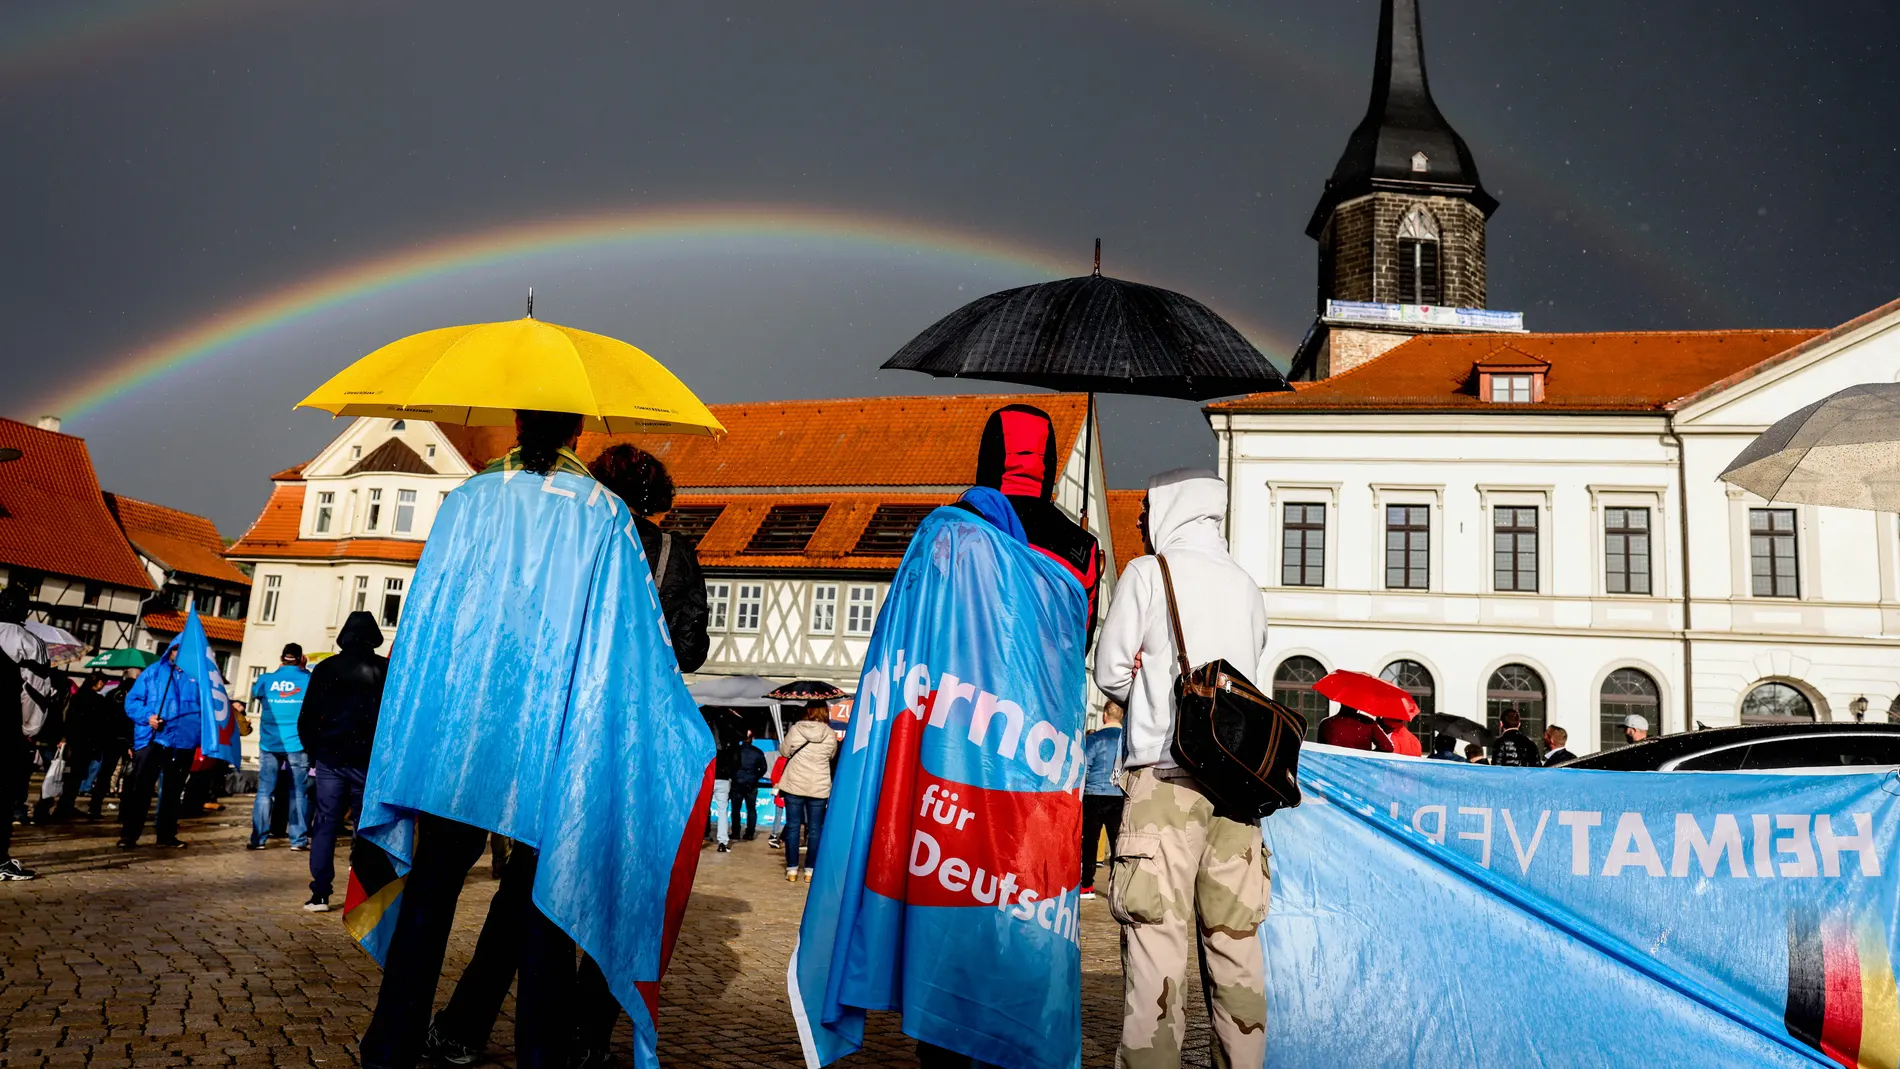 Simpatizantes de Alternativa para Alemania (AfD) asisten a un mitin de campaña en Haldensleben